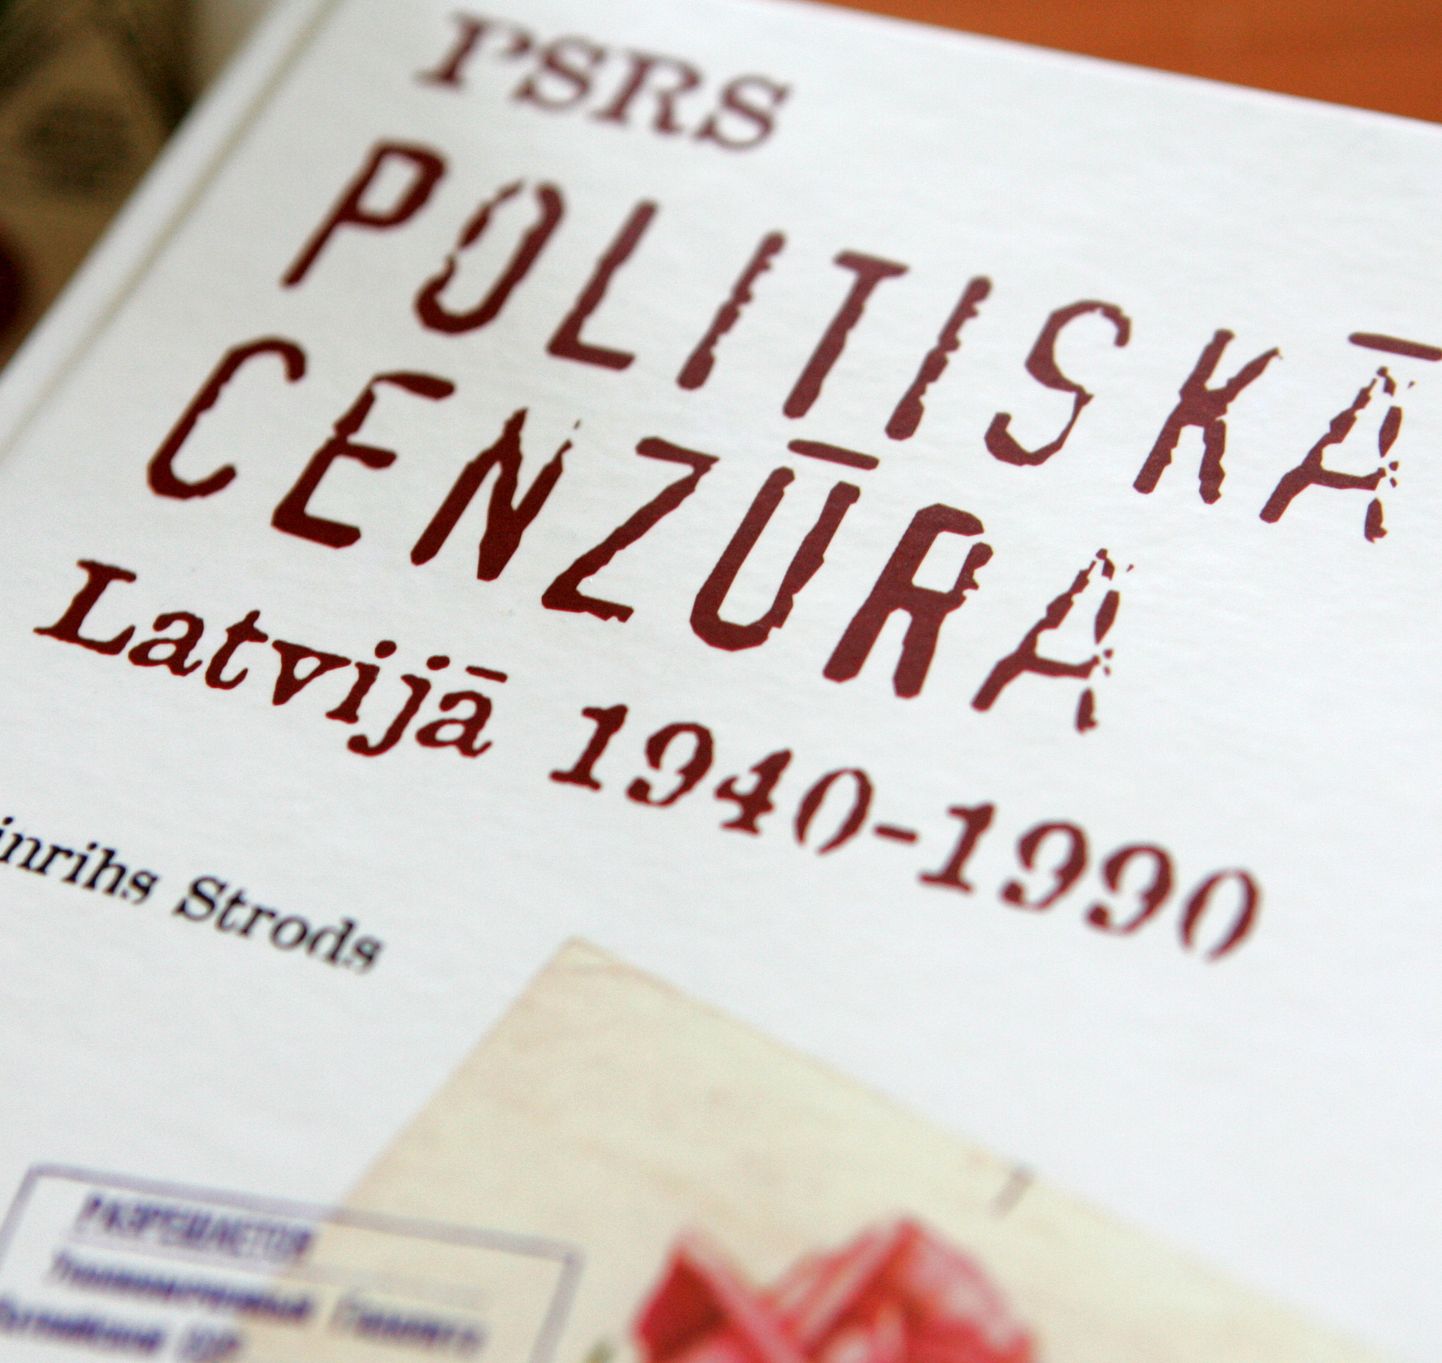 Grāmata "PSRS politiskā cenzūra Latvijā 1940-1990"